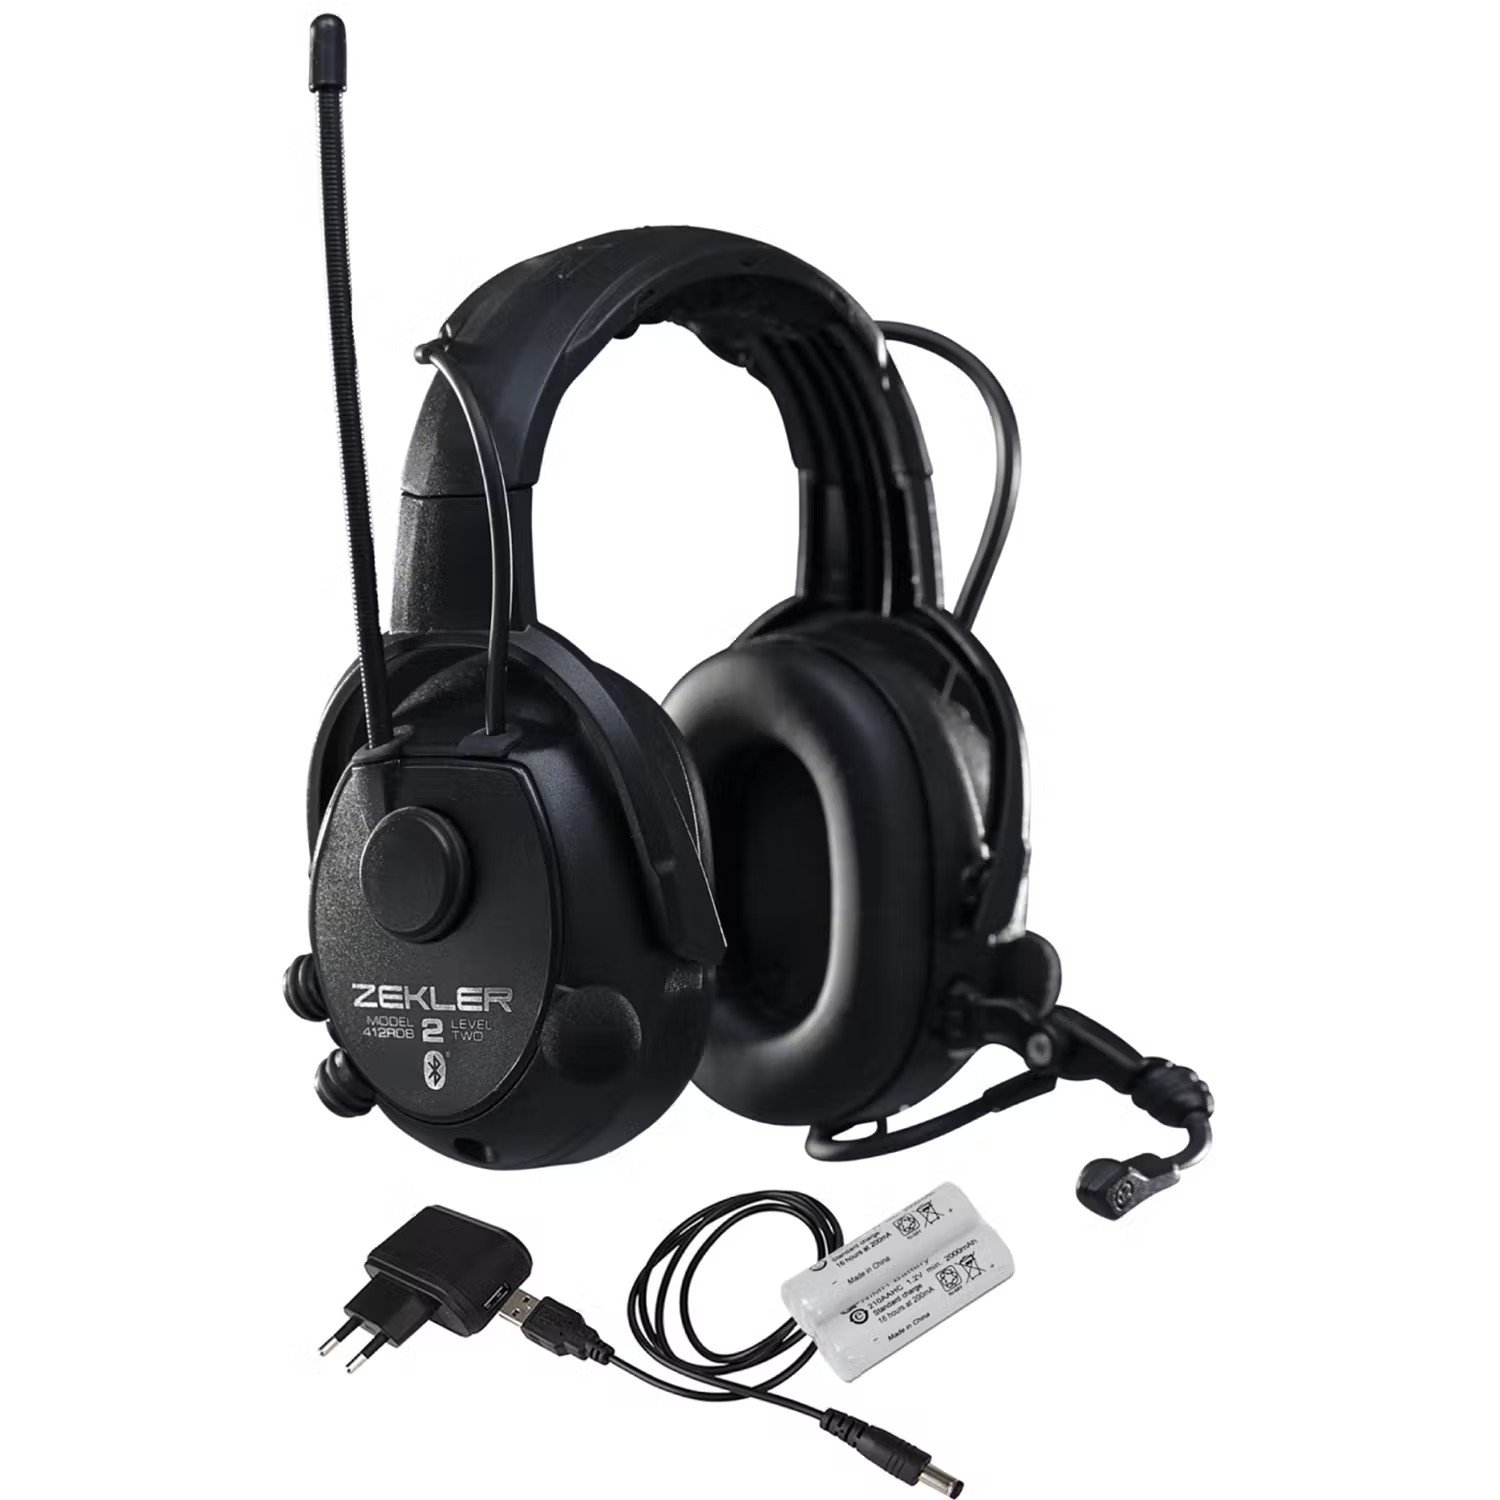 Hörselskydd med bluetooth - Hörselkåpor Zekler 412RDB inkl. batteri och laddare